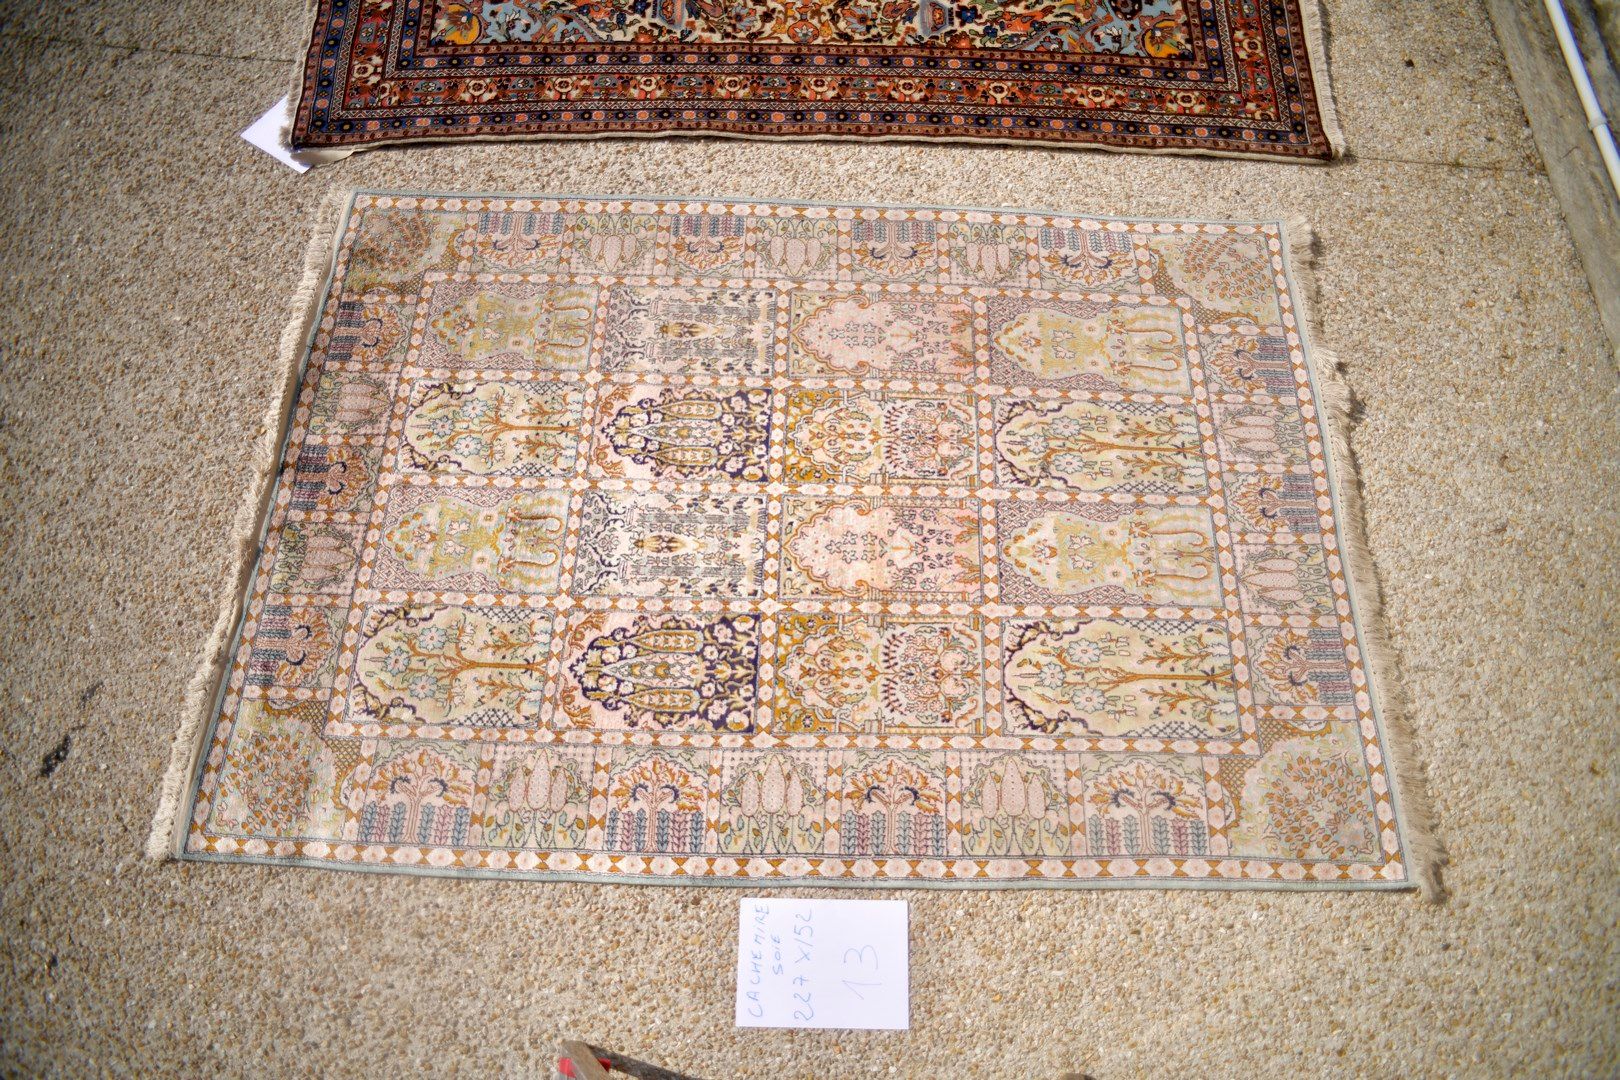 Null 印度丝绸羊绒，1980年。

棉质基础上的丝绒。

花园装饰。

状况良好。 

227 x 152 cm